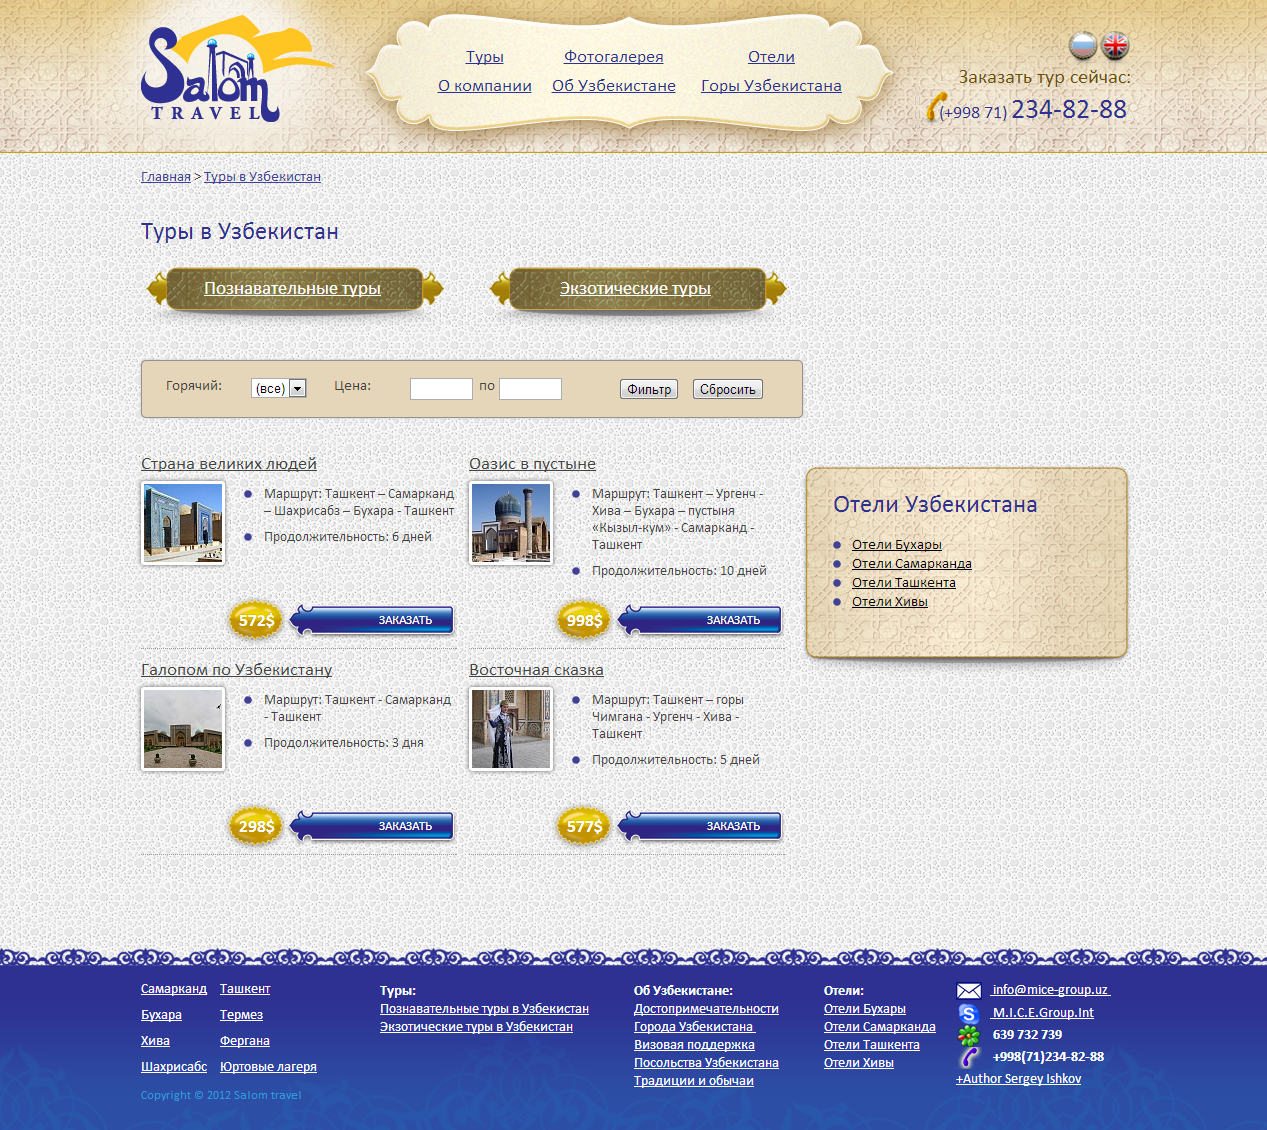 сайт туристической компании «salom travel»